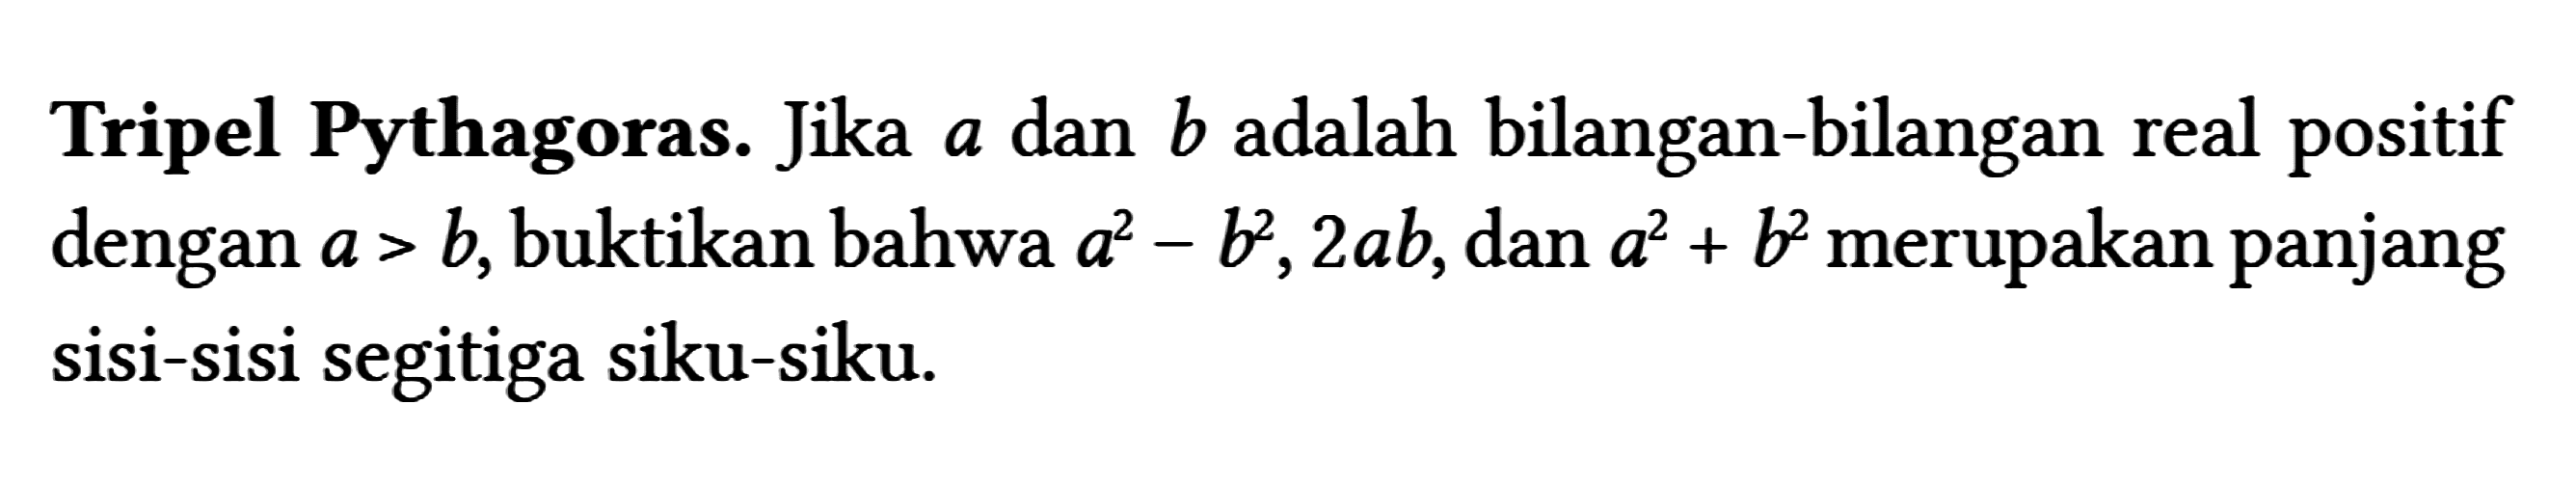 Tripel Pythagoras. Jika a dan b adalah bilangan-bilangan real positif dengan a>b , buktikan bahwa a^(2)-b^(2), 2 a b , dan a^(2)+b^(2) merupakan panjang sisi-sisi segitiga siku-siku.